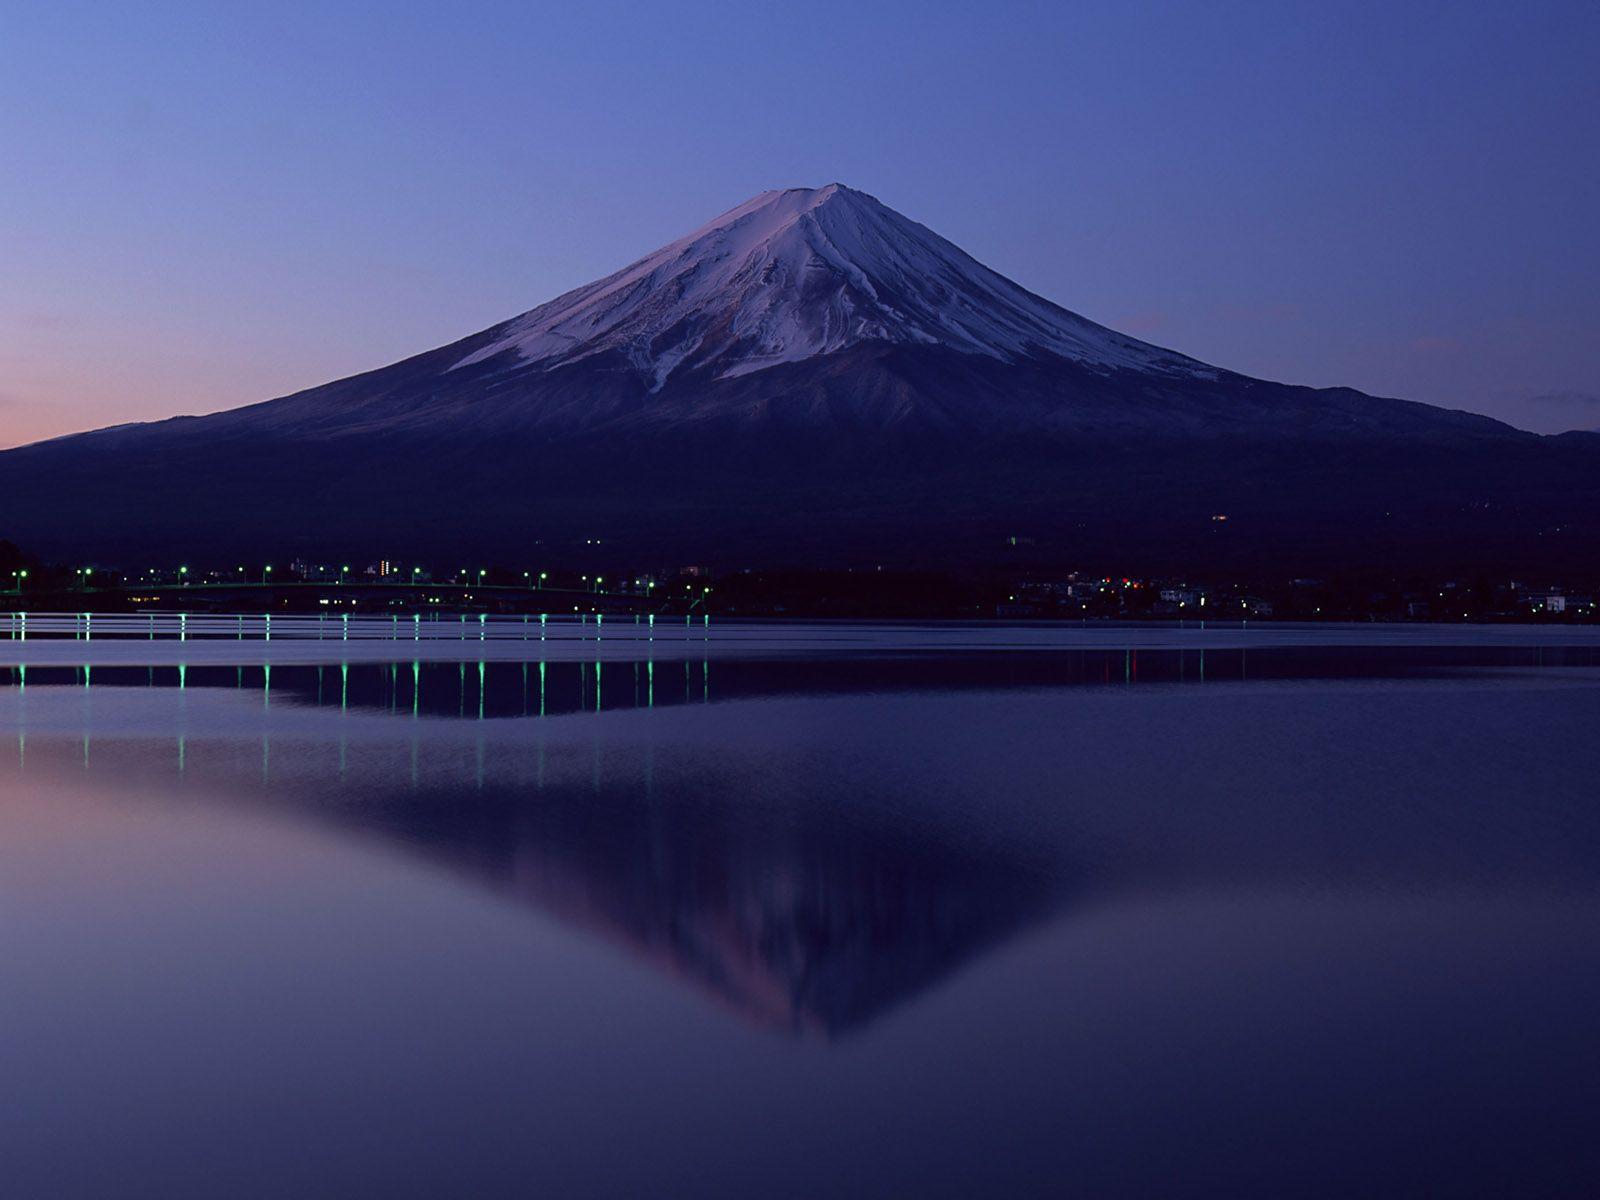 Desktop Wallpaper · Gallery · Nature · Japan Mount Fuji. Free